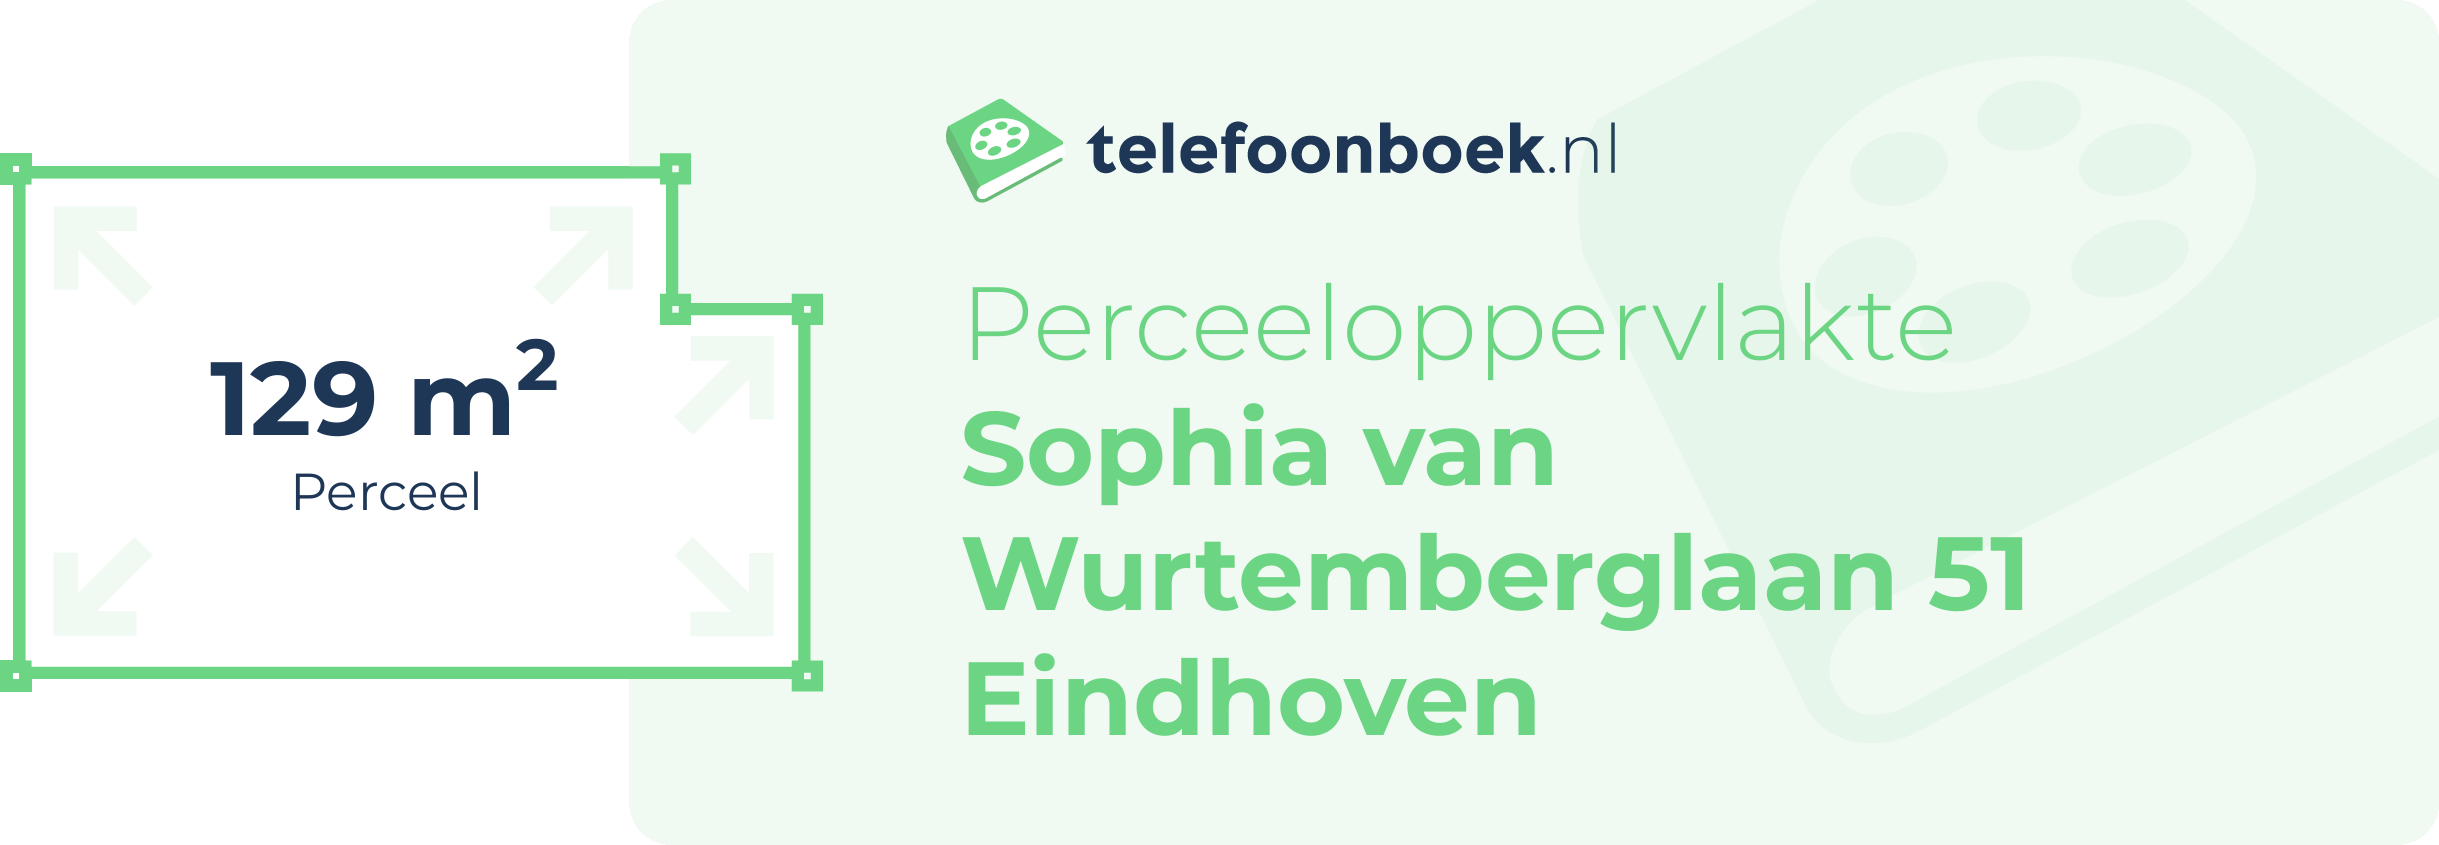 Perceeloppervlakte Sophia Van Wurtemberglaan 51 Eindhoven